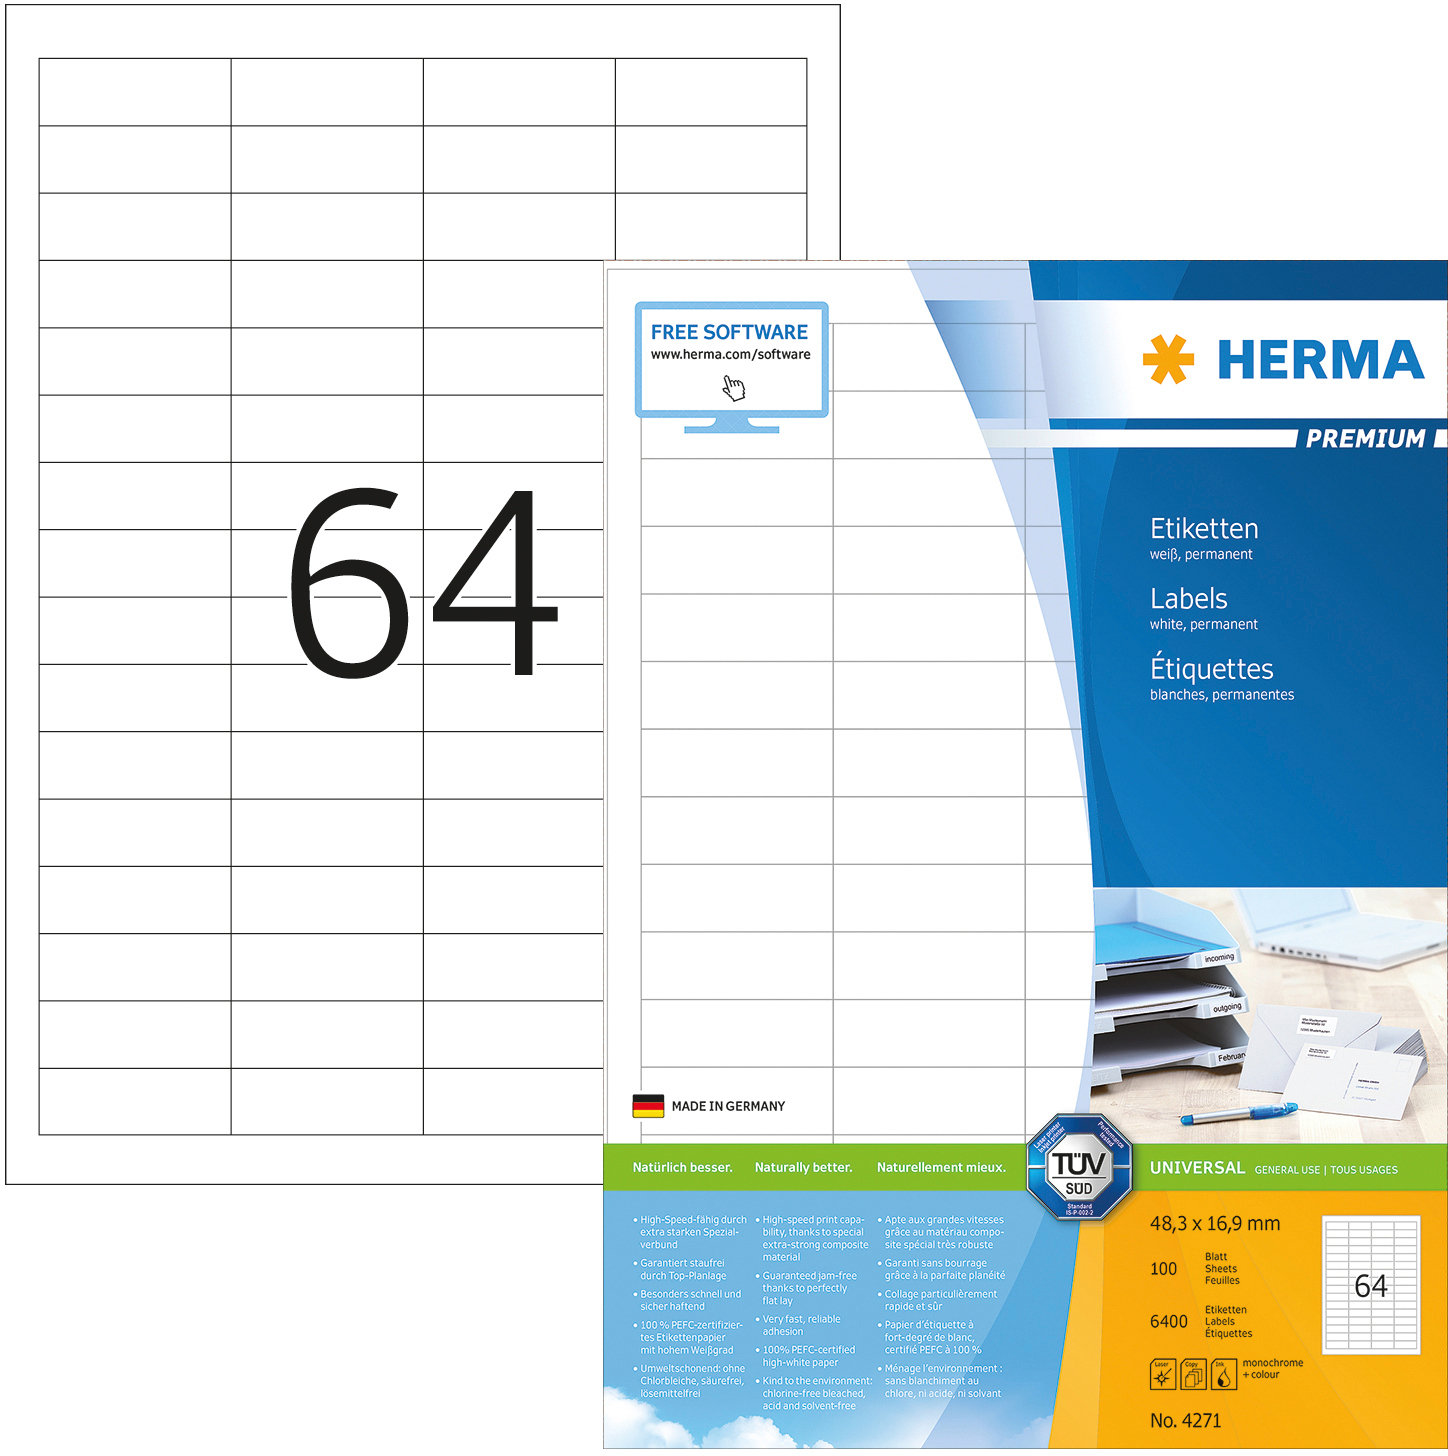 HERMA Étiquettes univer. 48,3x16,9mm 4271 blanc 6400 pcs./100 flls.